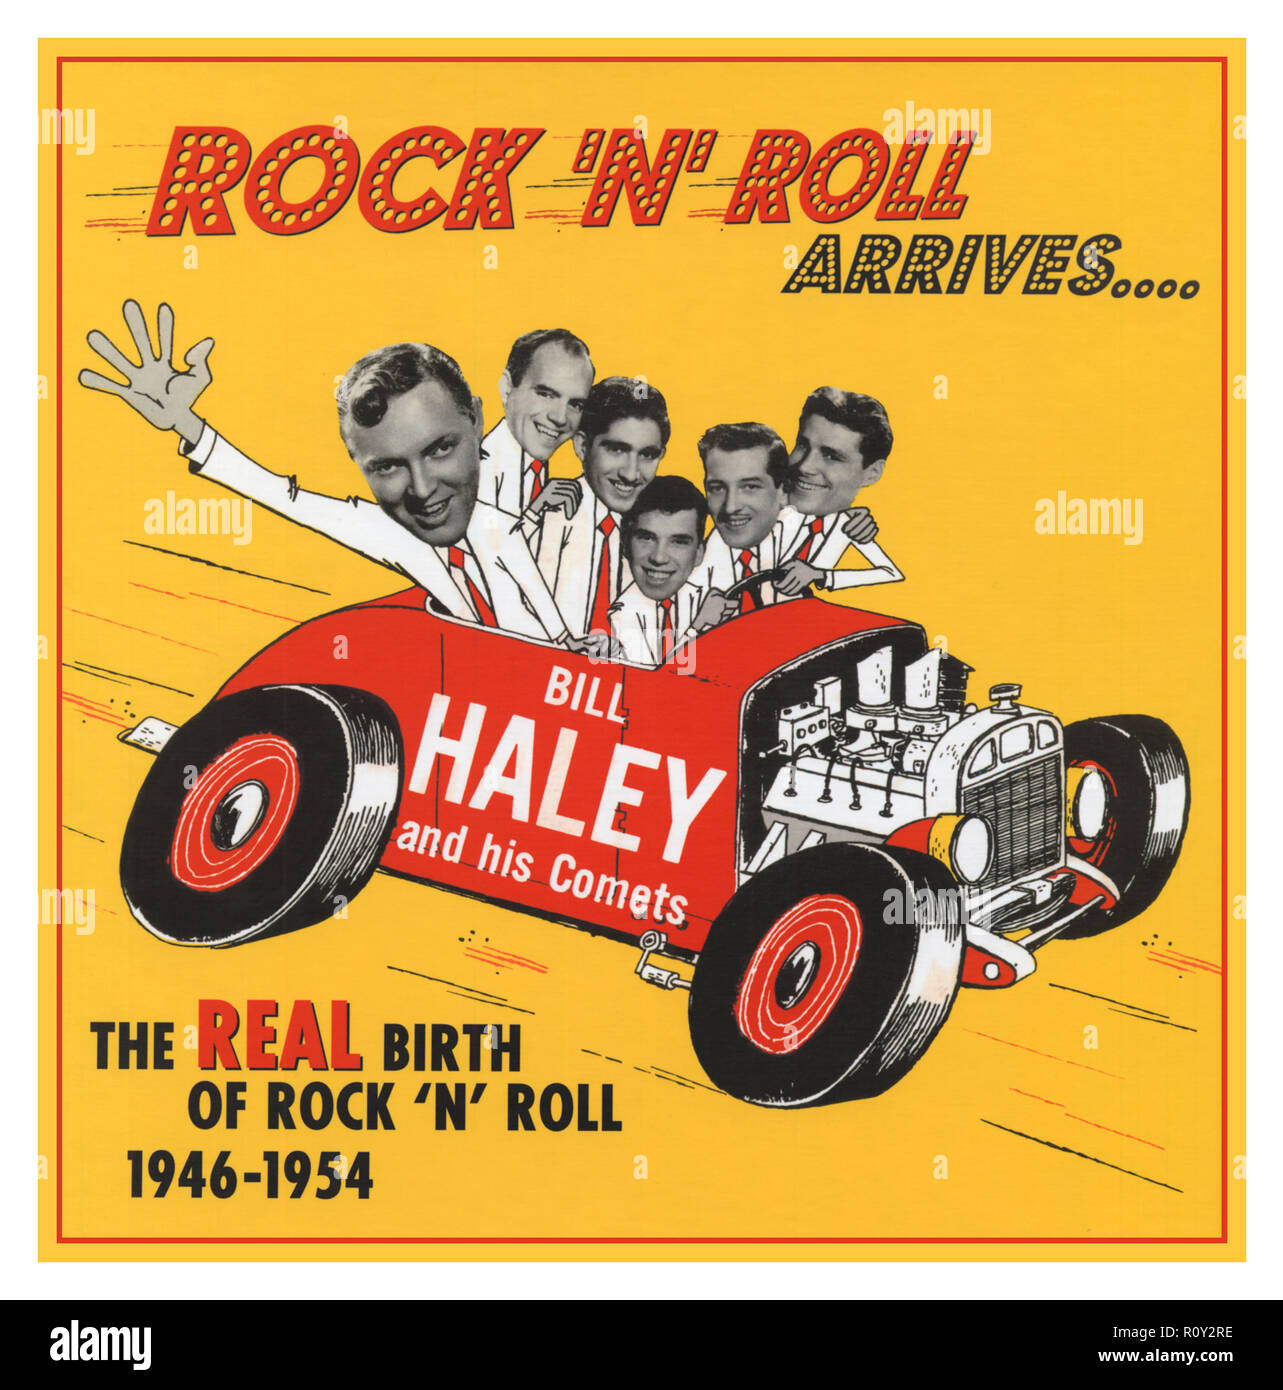 Bill Haley et ses comètes- ‎ Rock 'N' Roll arrive.. Compilation CD de Bill Haley et ses Comets de chansons Rock and Roll 1946-1954 réédition en 2006 ces enregistrements sont où rock 'n' roll a vraiment commencé. Elles sont antérieures à Rock autour de l'horloge, et révéler la loi et les comètes au travail sur leur propre mélange unique de boogie woogie, hillbilly, pop, blues et jazz, des années avant que quelqu'un d'autre. L'entendre nous inventer le comme-encore sans nom de la musique qui est venue à être appelée rock 'n' roll qui finalement a changé le monde. Banque D'Images